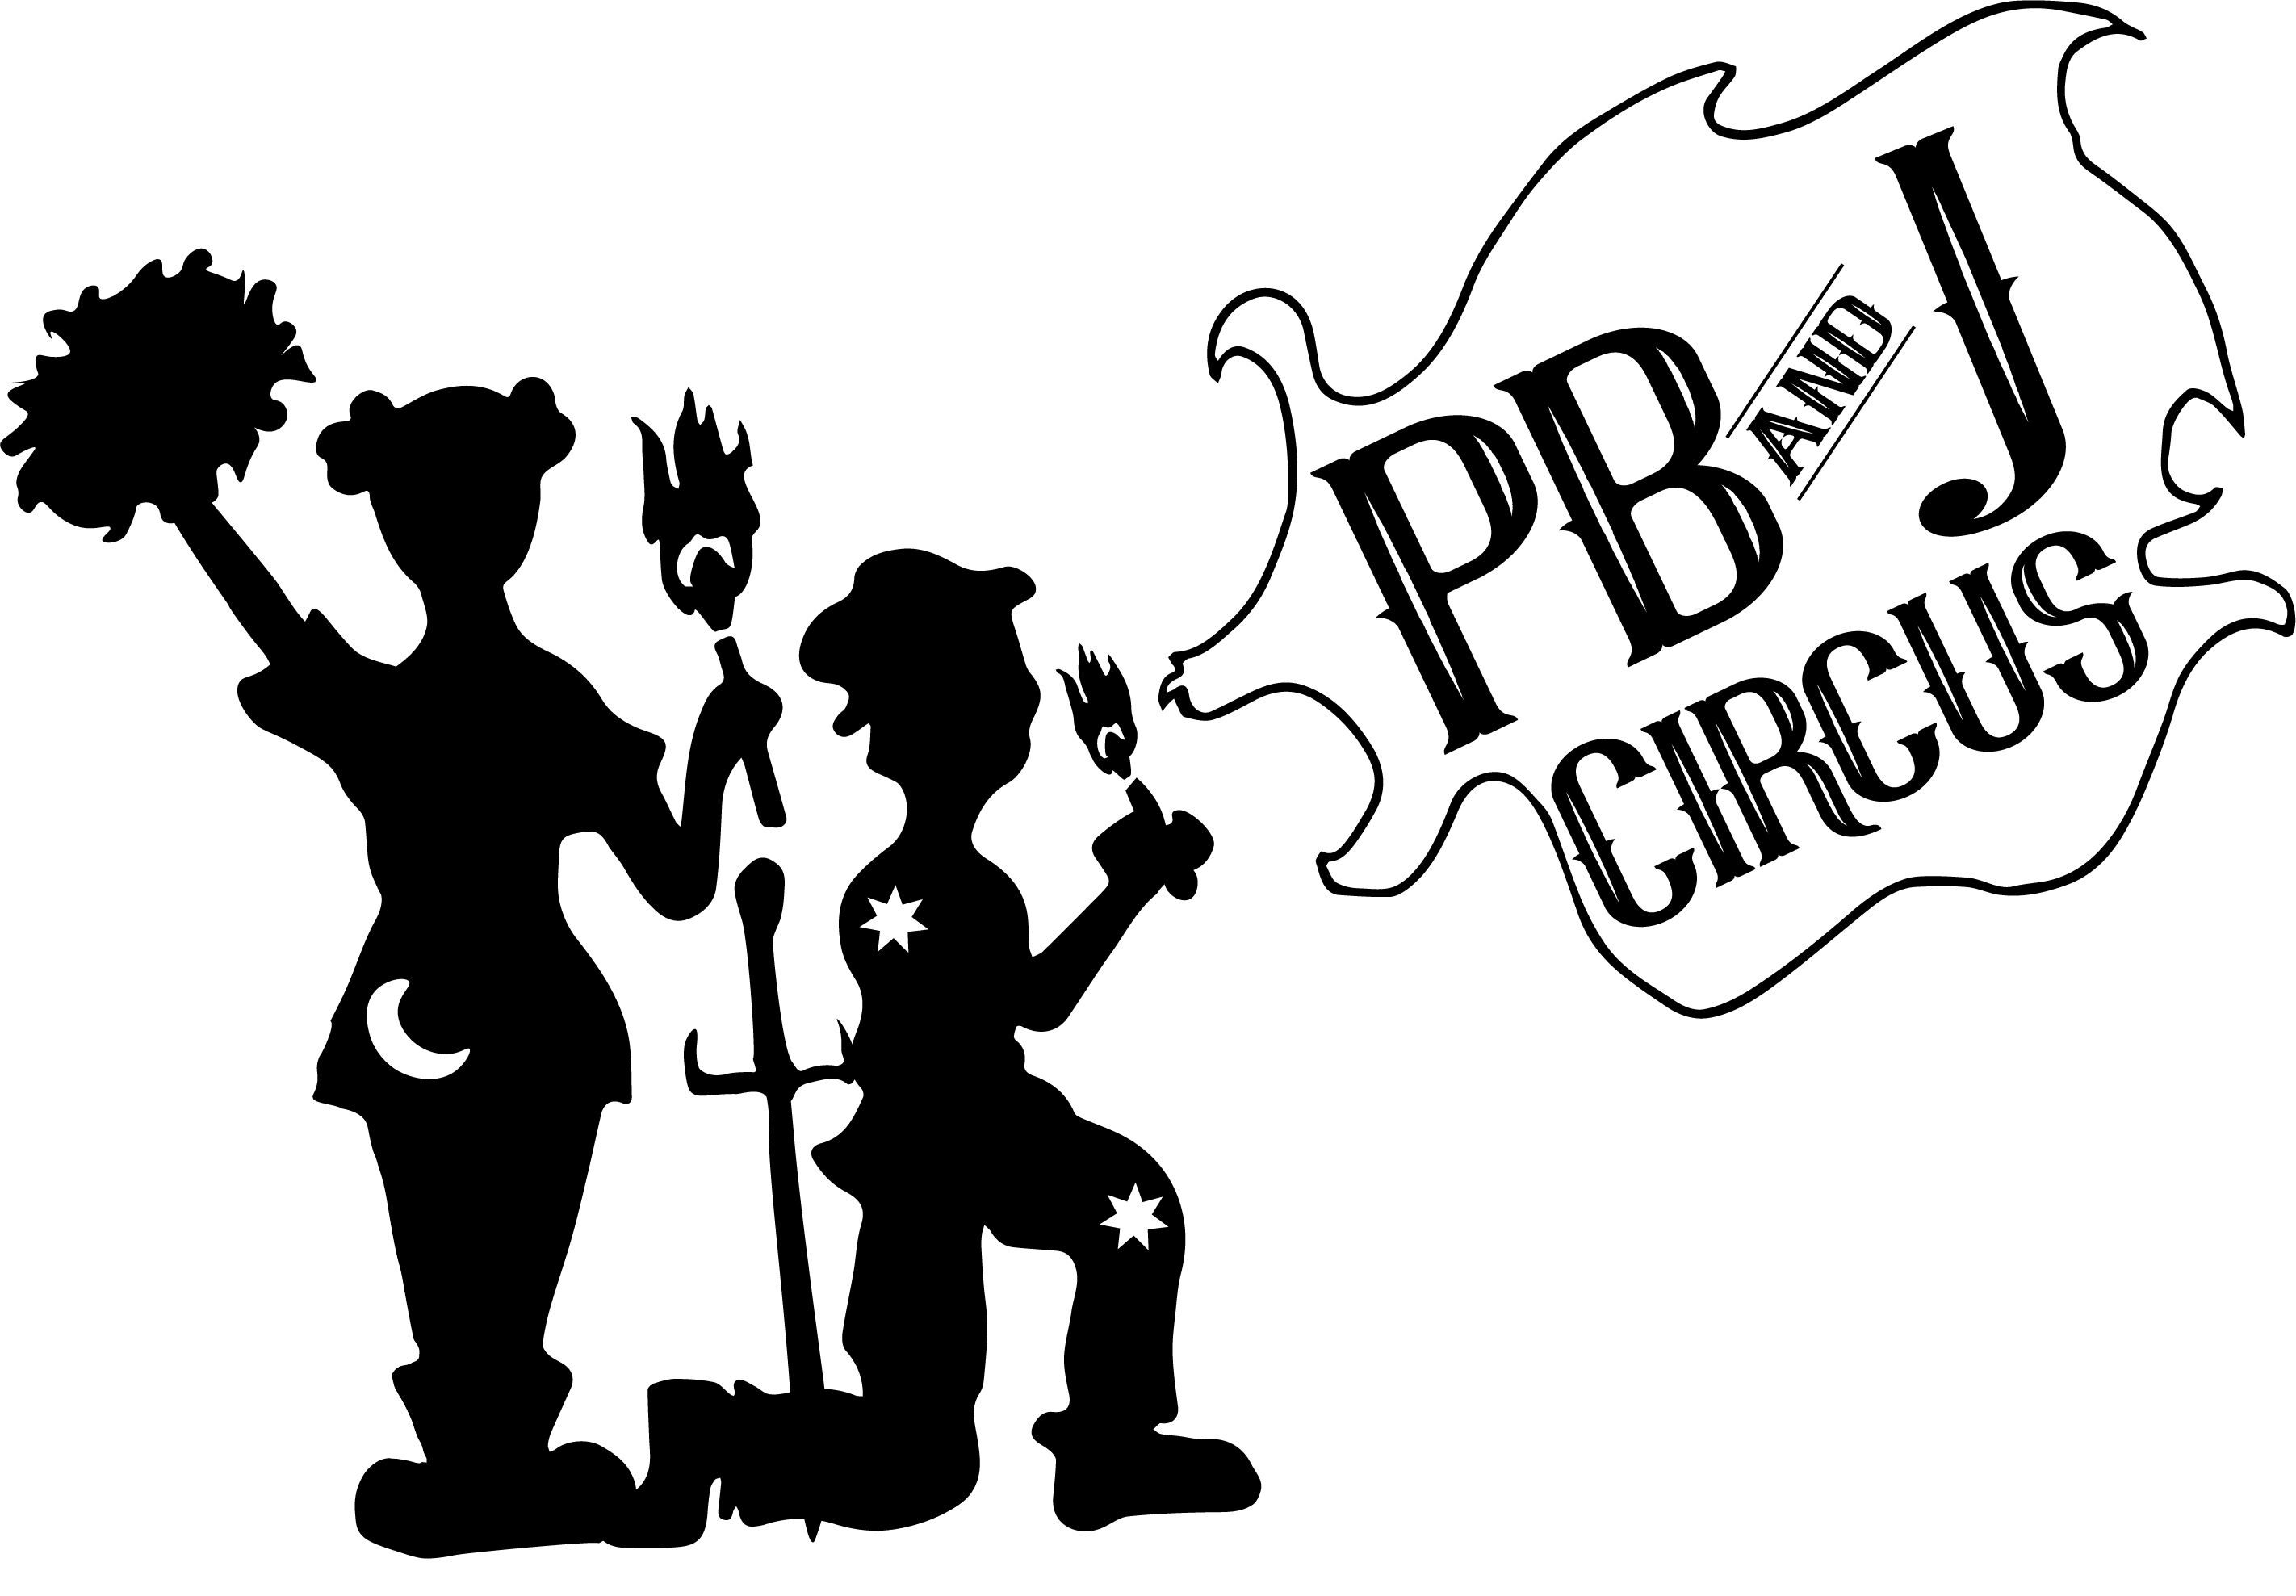 PB & J Circus logo